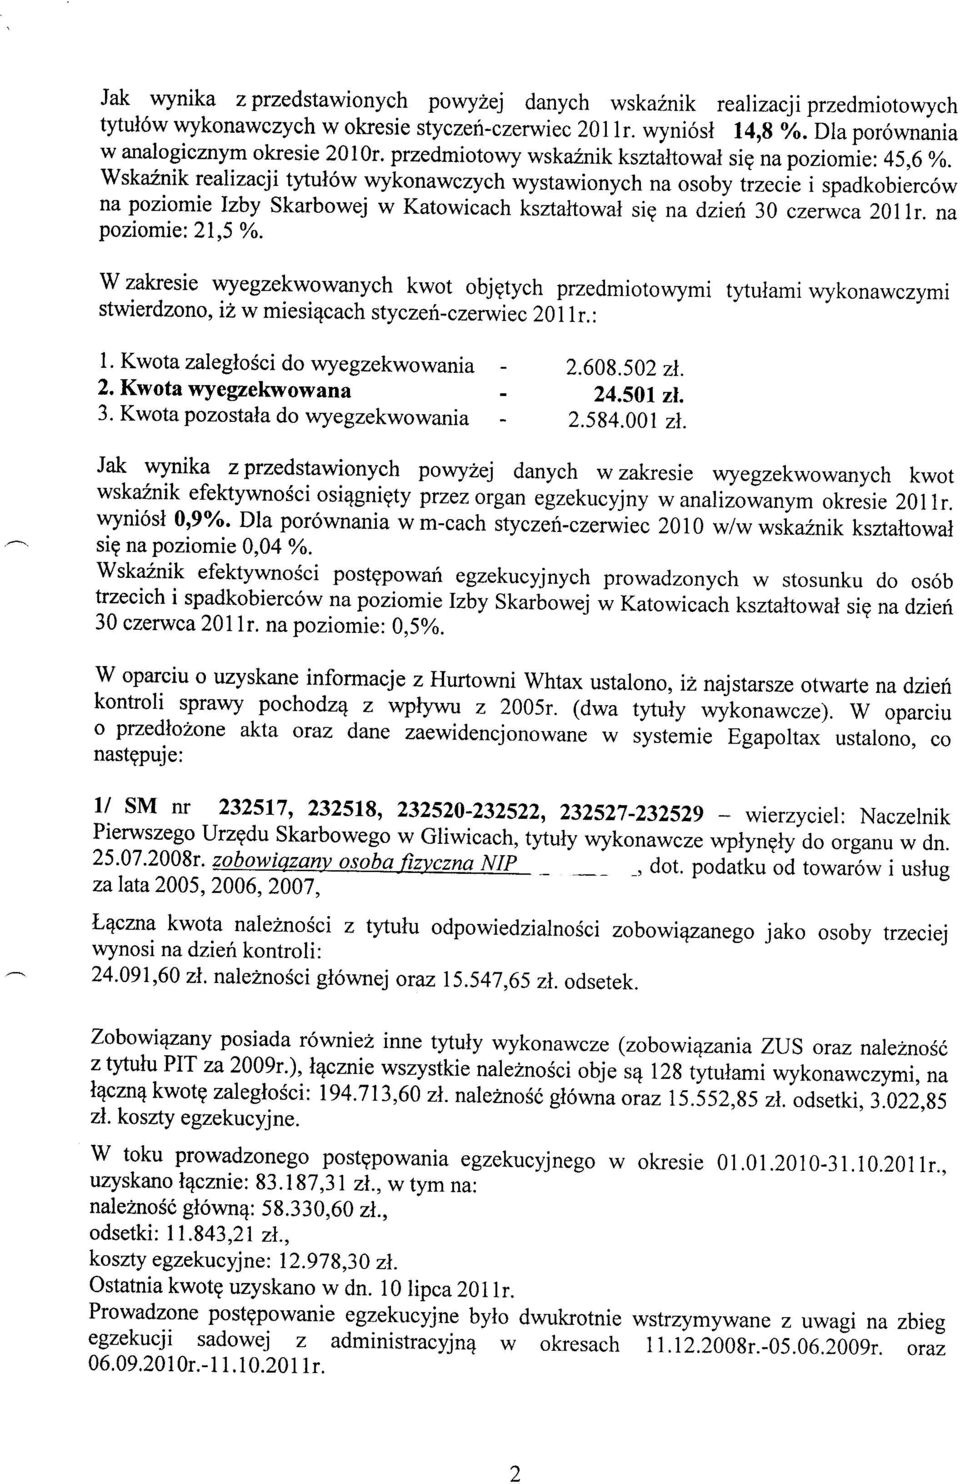 Wskaznik realizacji tytul6w wykonawczych wystawionych na osoby trzecie i spadkobierc6w na poziomie lzby Skarbowej w Katowicach ksztaltowal sig na dzieh 30 czerwca 20llr. na poziomie: 21,5 Yo.